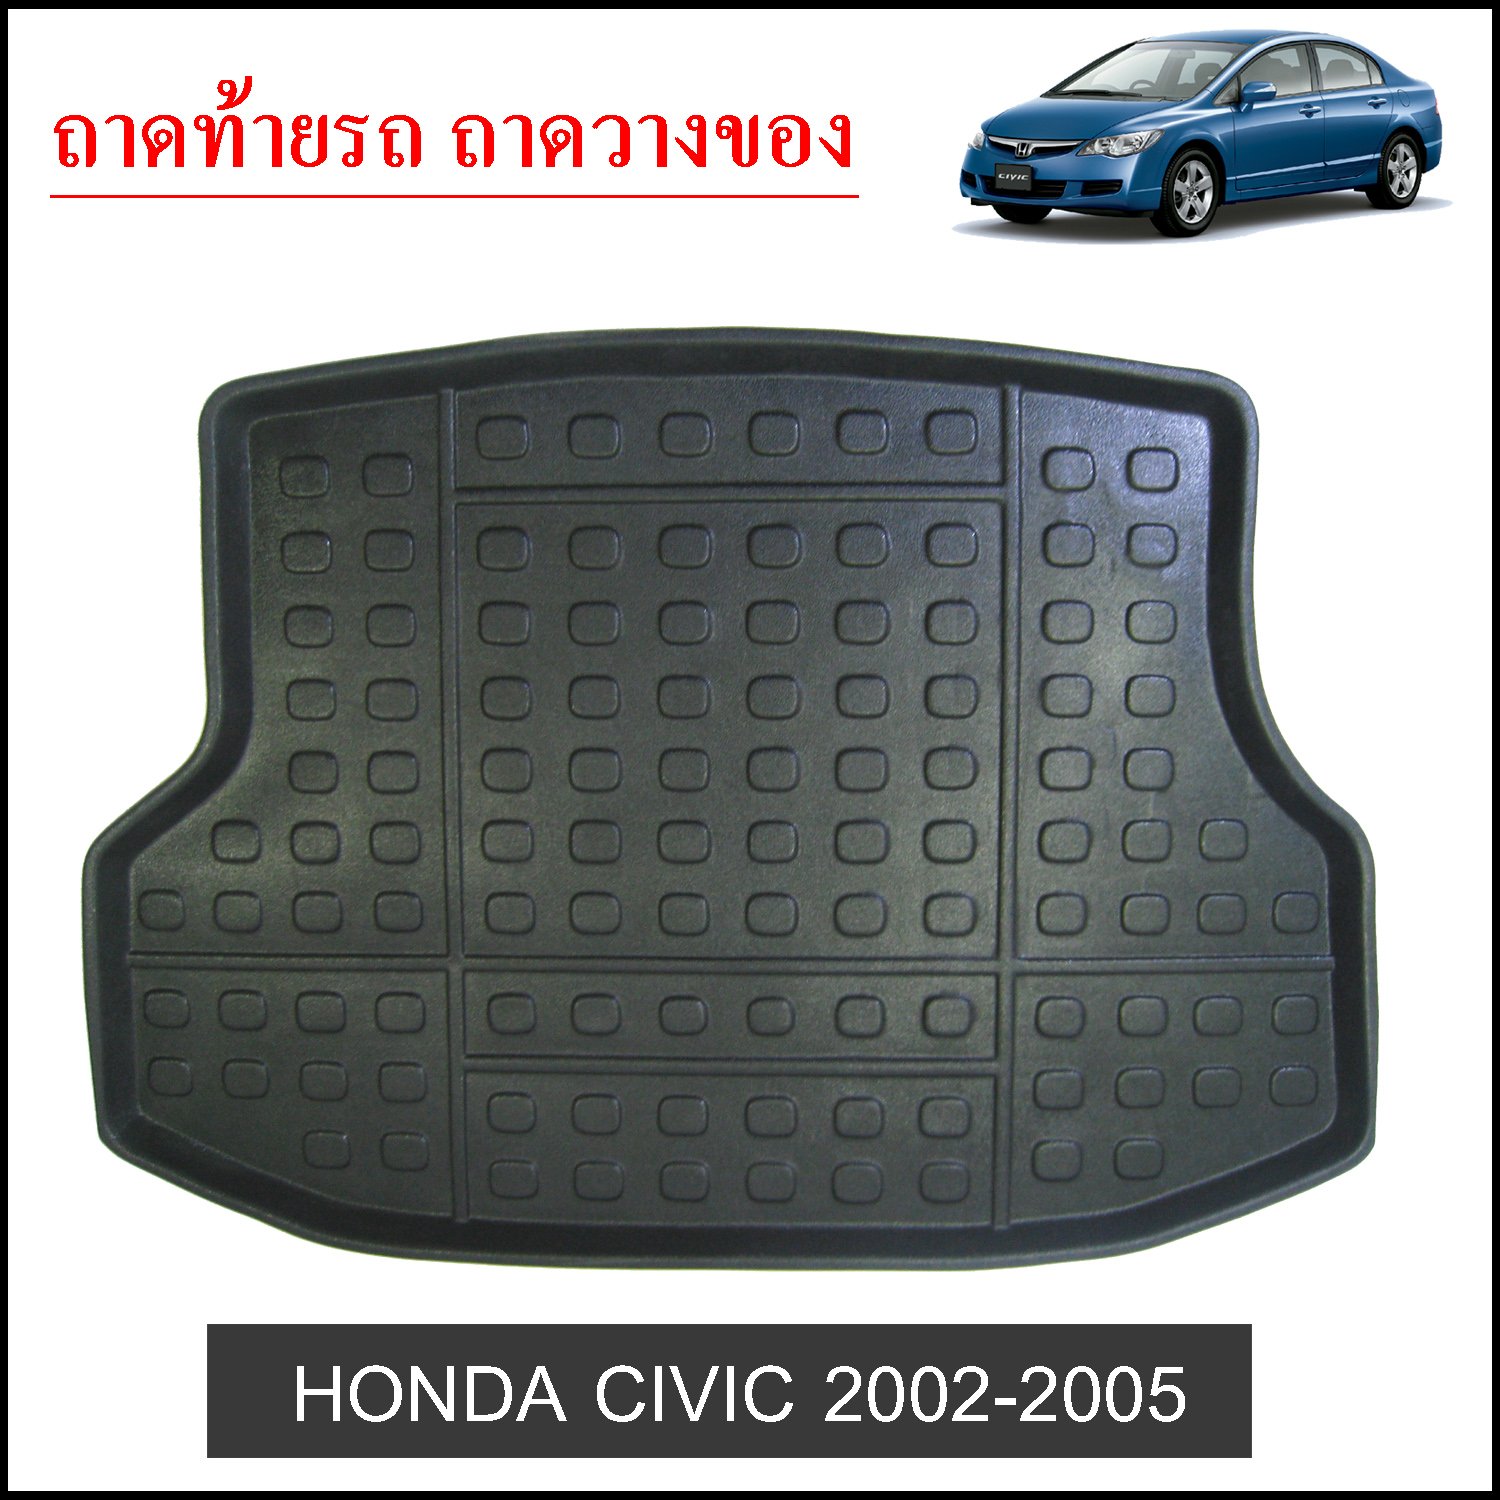 ถาดท้ายวางของ Honda Civic 2002-2005